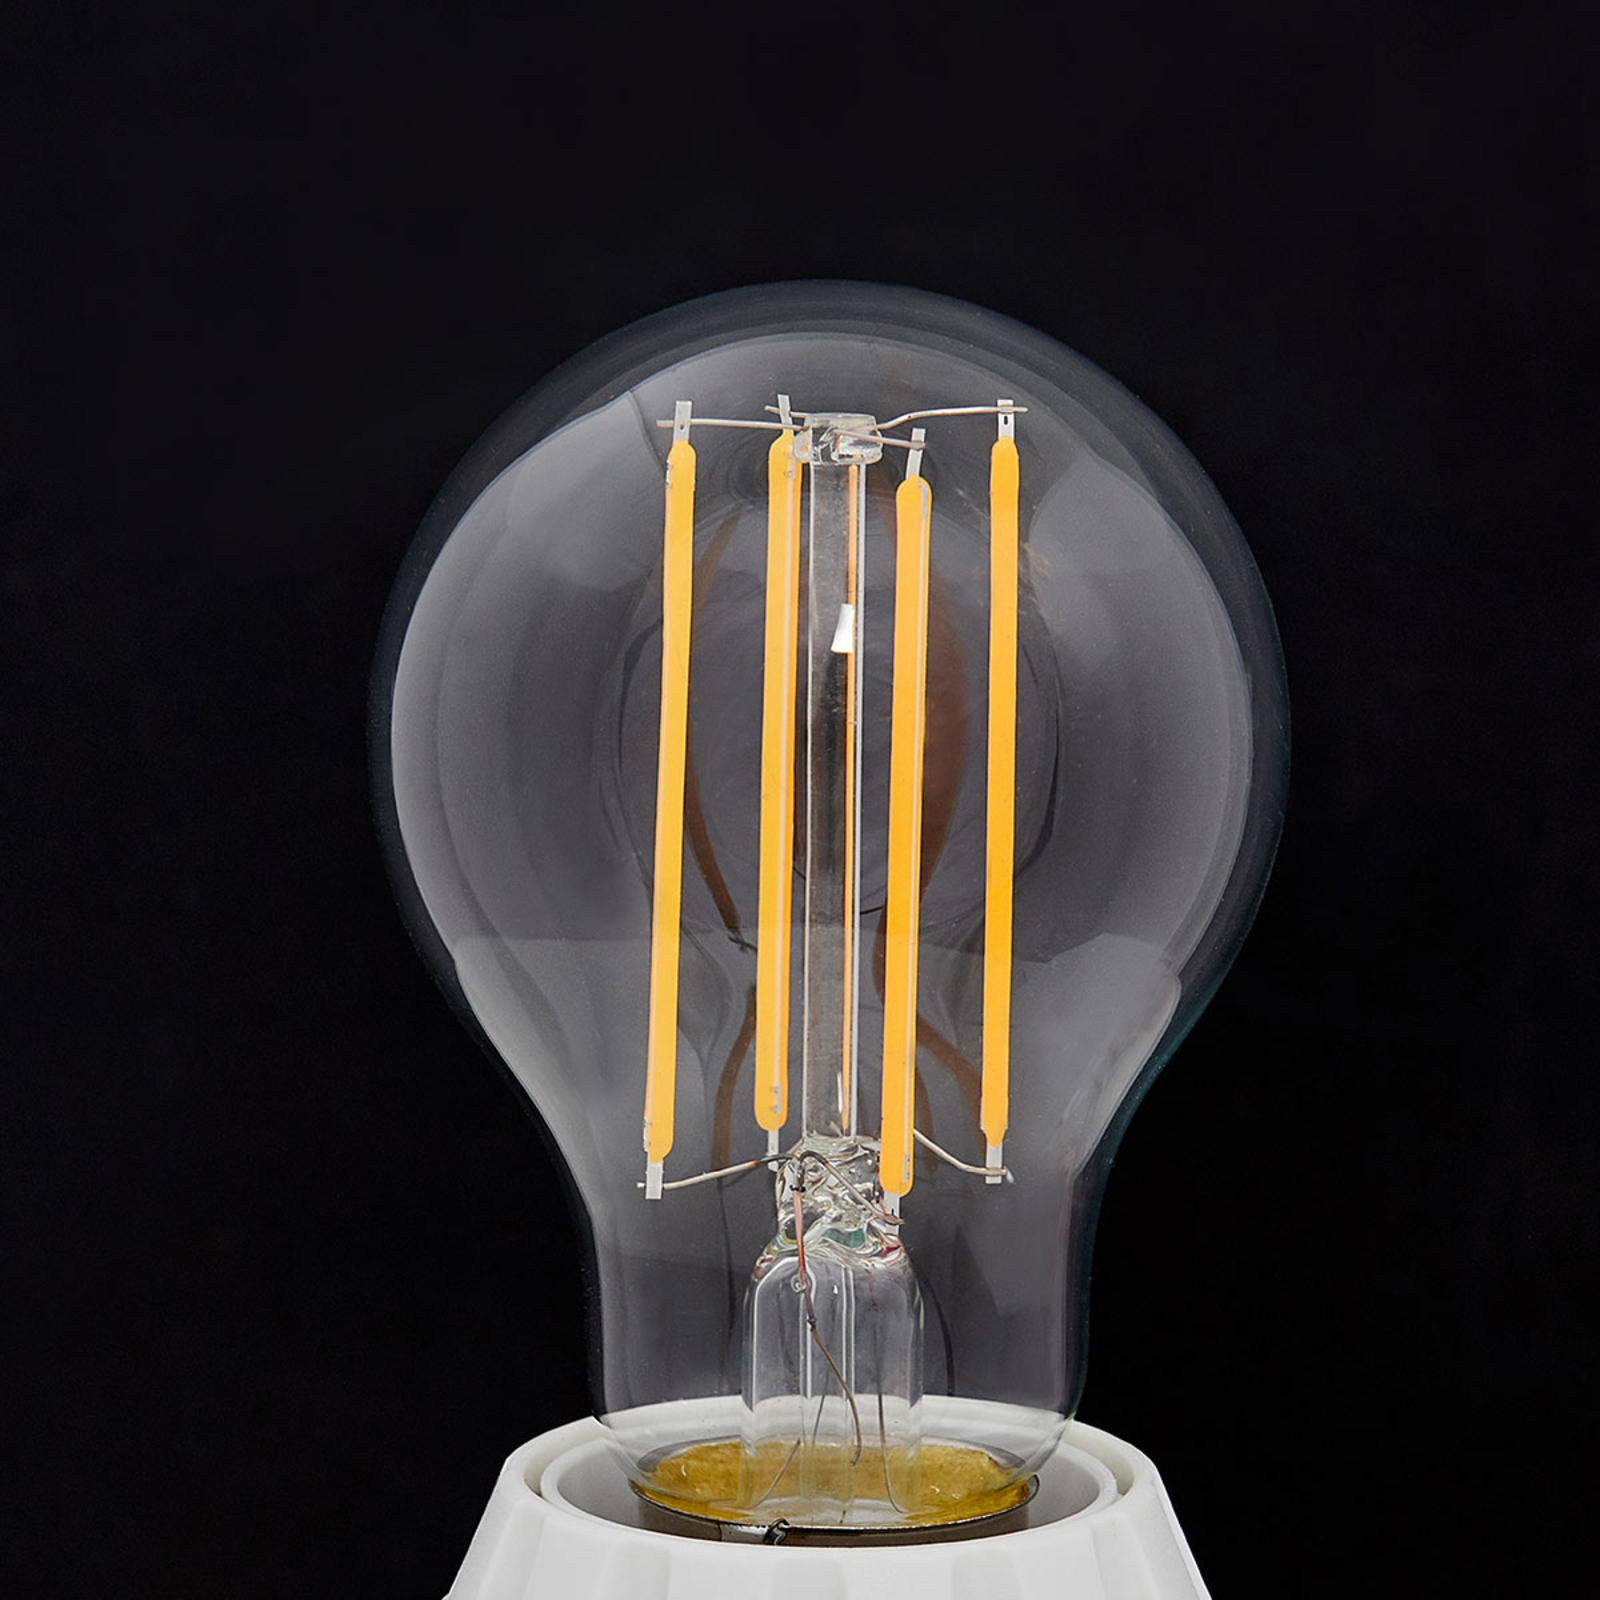 E27 filament LED bulb 7 W, 806 lm, 2,700 K, clear